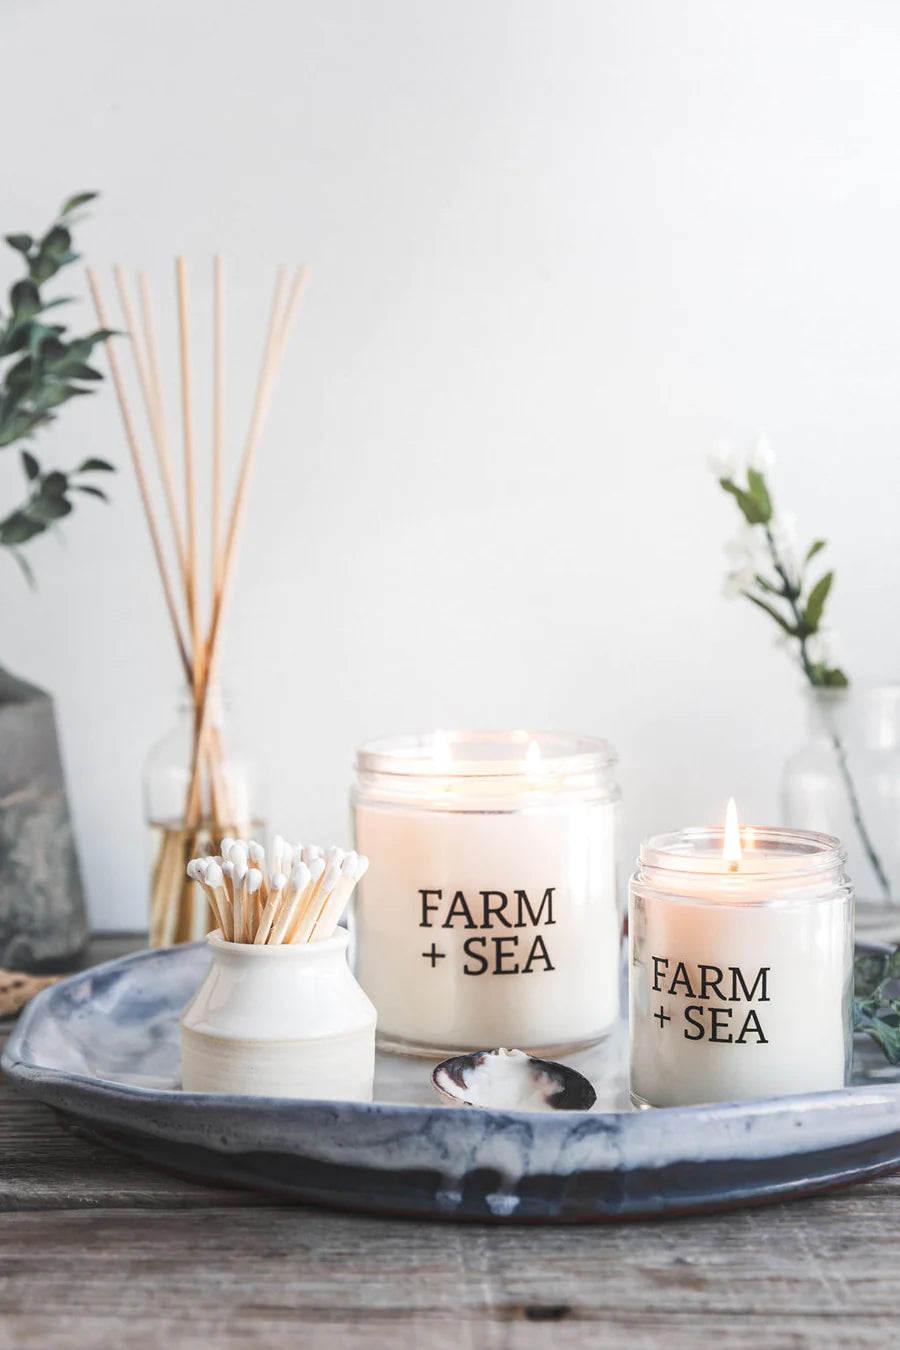 Farm + Sea Candle – White Cottage